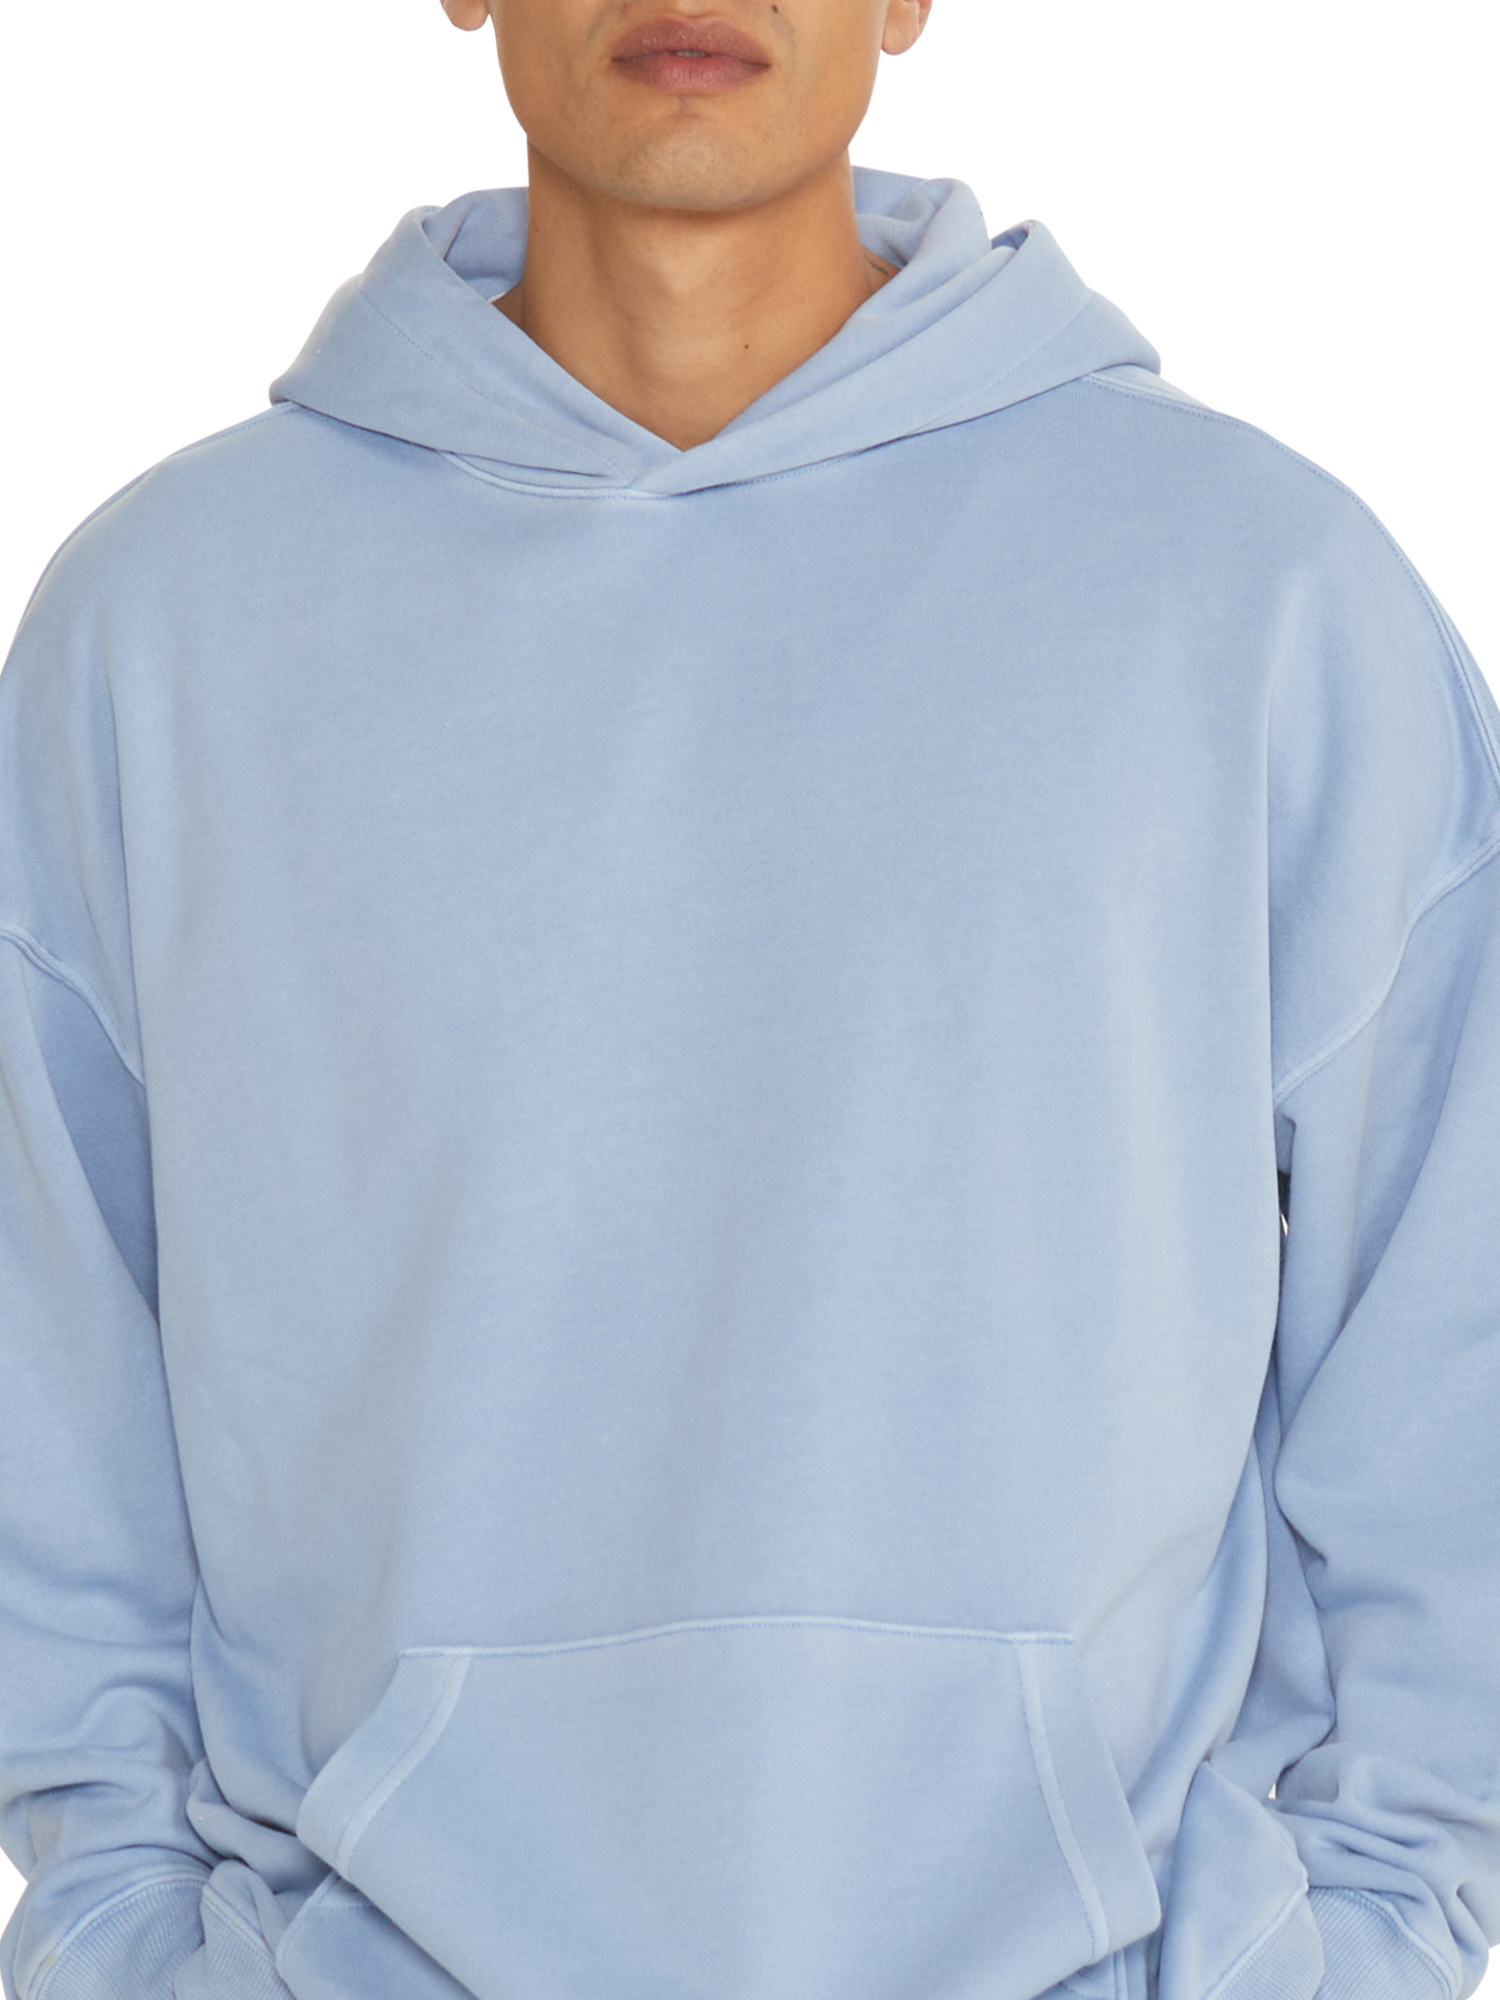 No Boundaries All Gender Fleece Hoodie Sweatshirt, Men's Sizes XS - 5XL - image 5 of 5